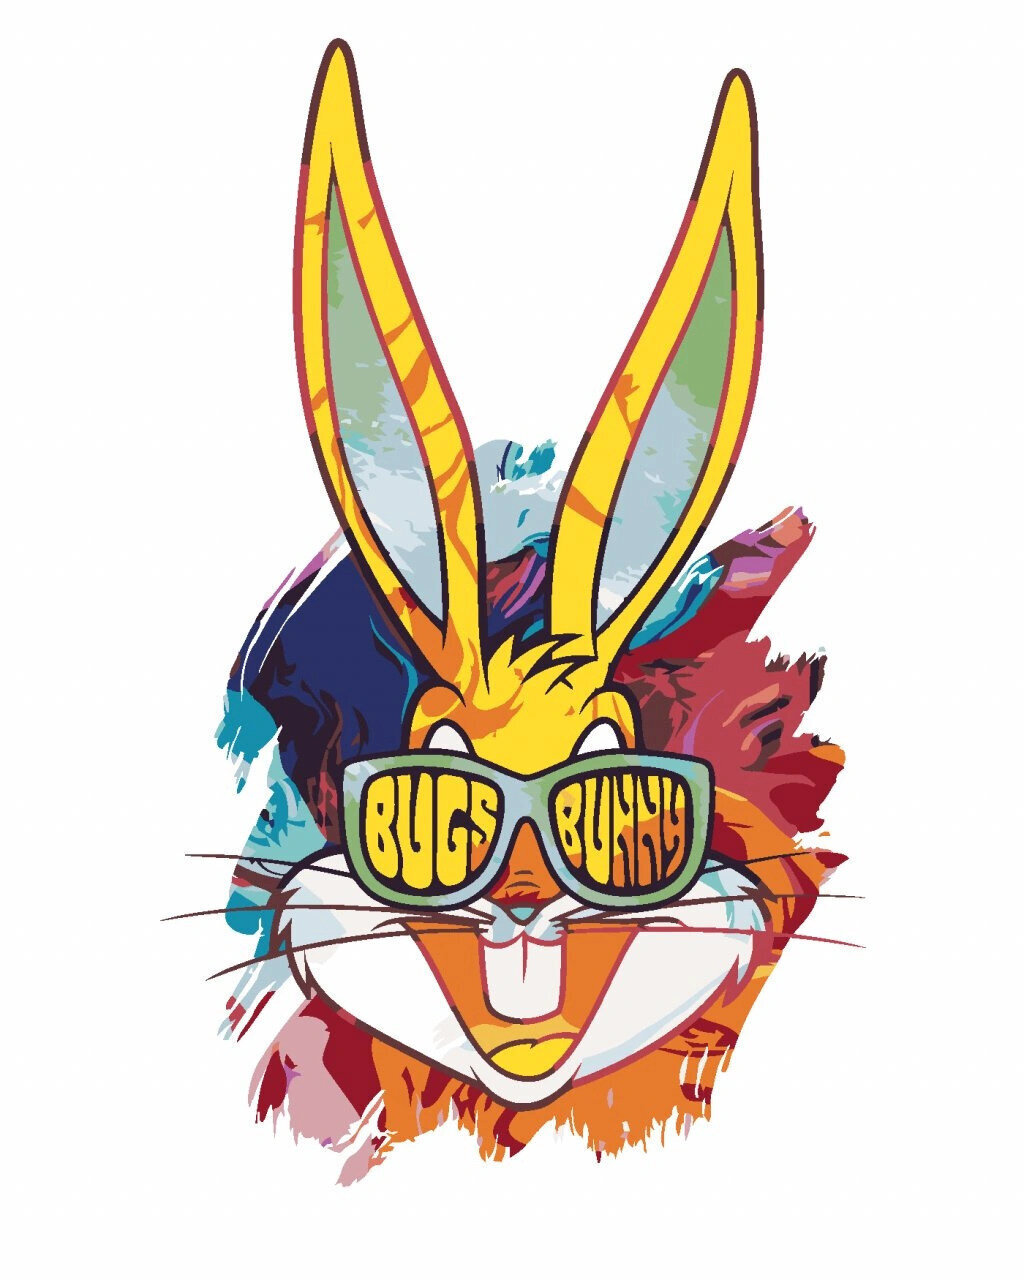 Festés számok szerint Zuty Festés számok szerint Painted Bugs Bunny (Looney Tunes)